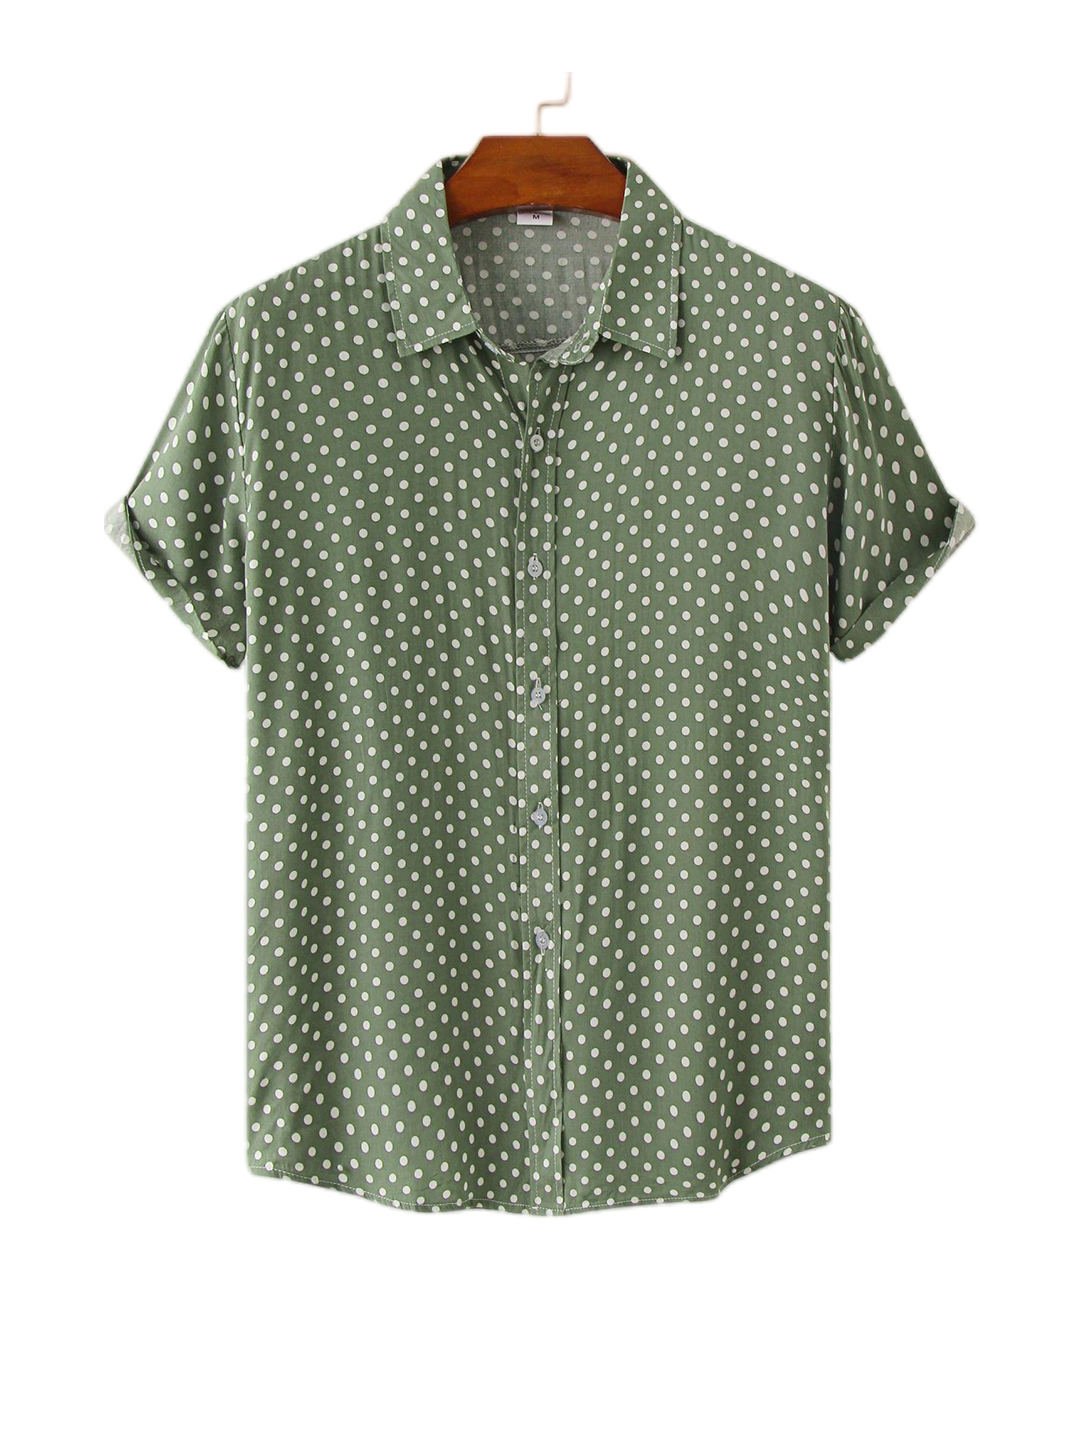 Polka Dot Retro Printed Short-sleeved Shirt 